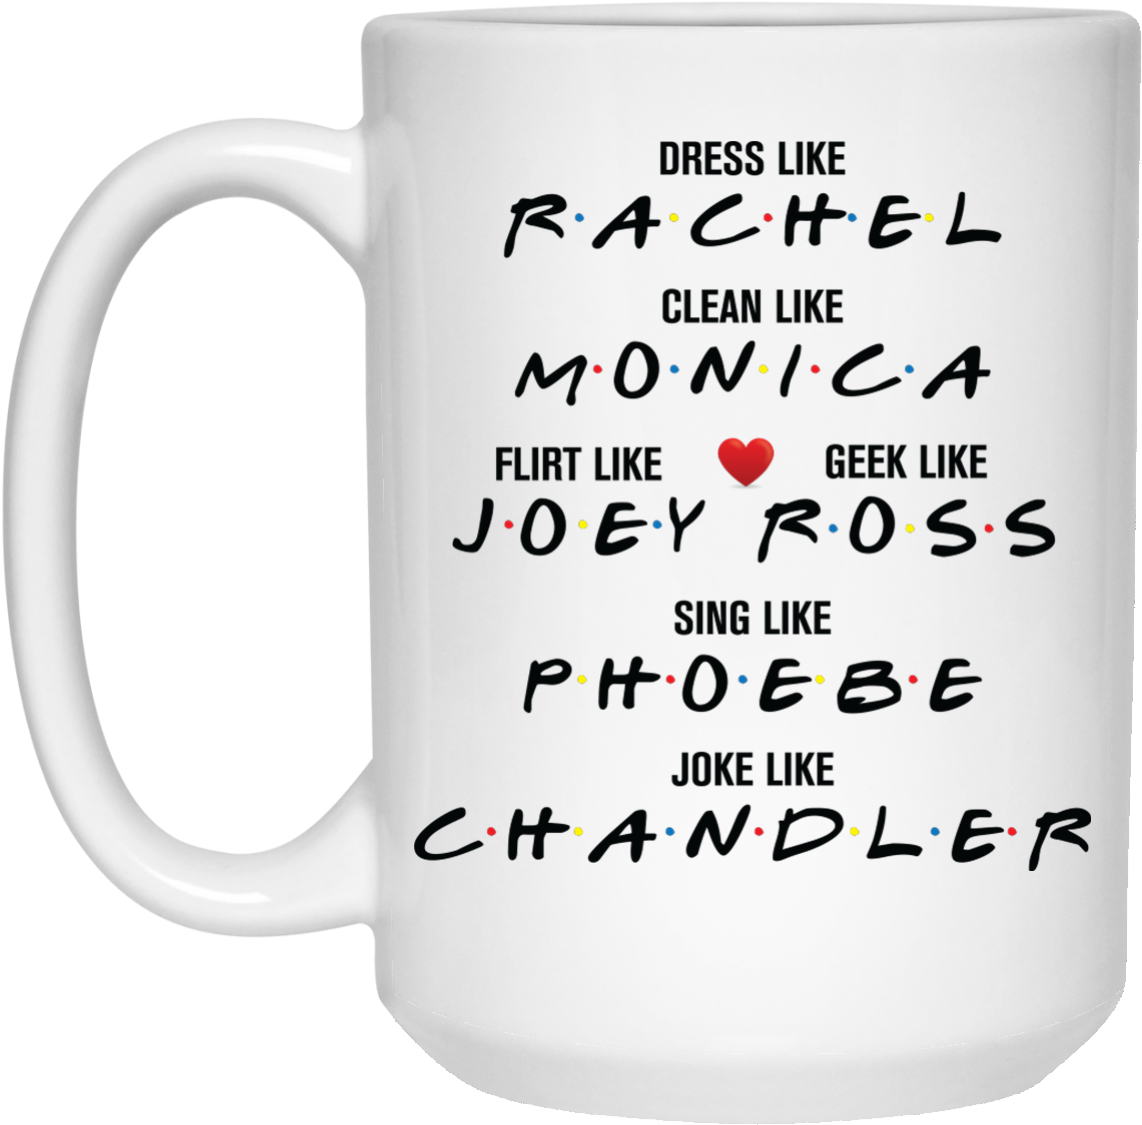 Dress Like Rachel Lean Like Monica Flirt Like Joey - Jack And Sally Coffee Mug Clipart (1155x1155), Png Download